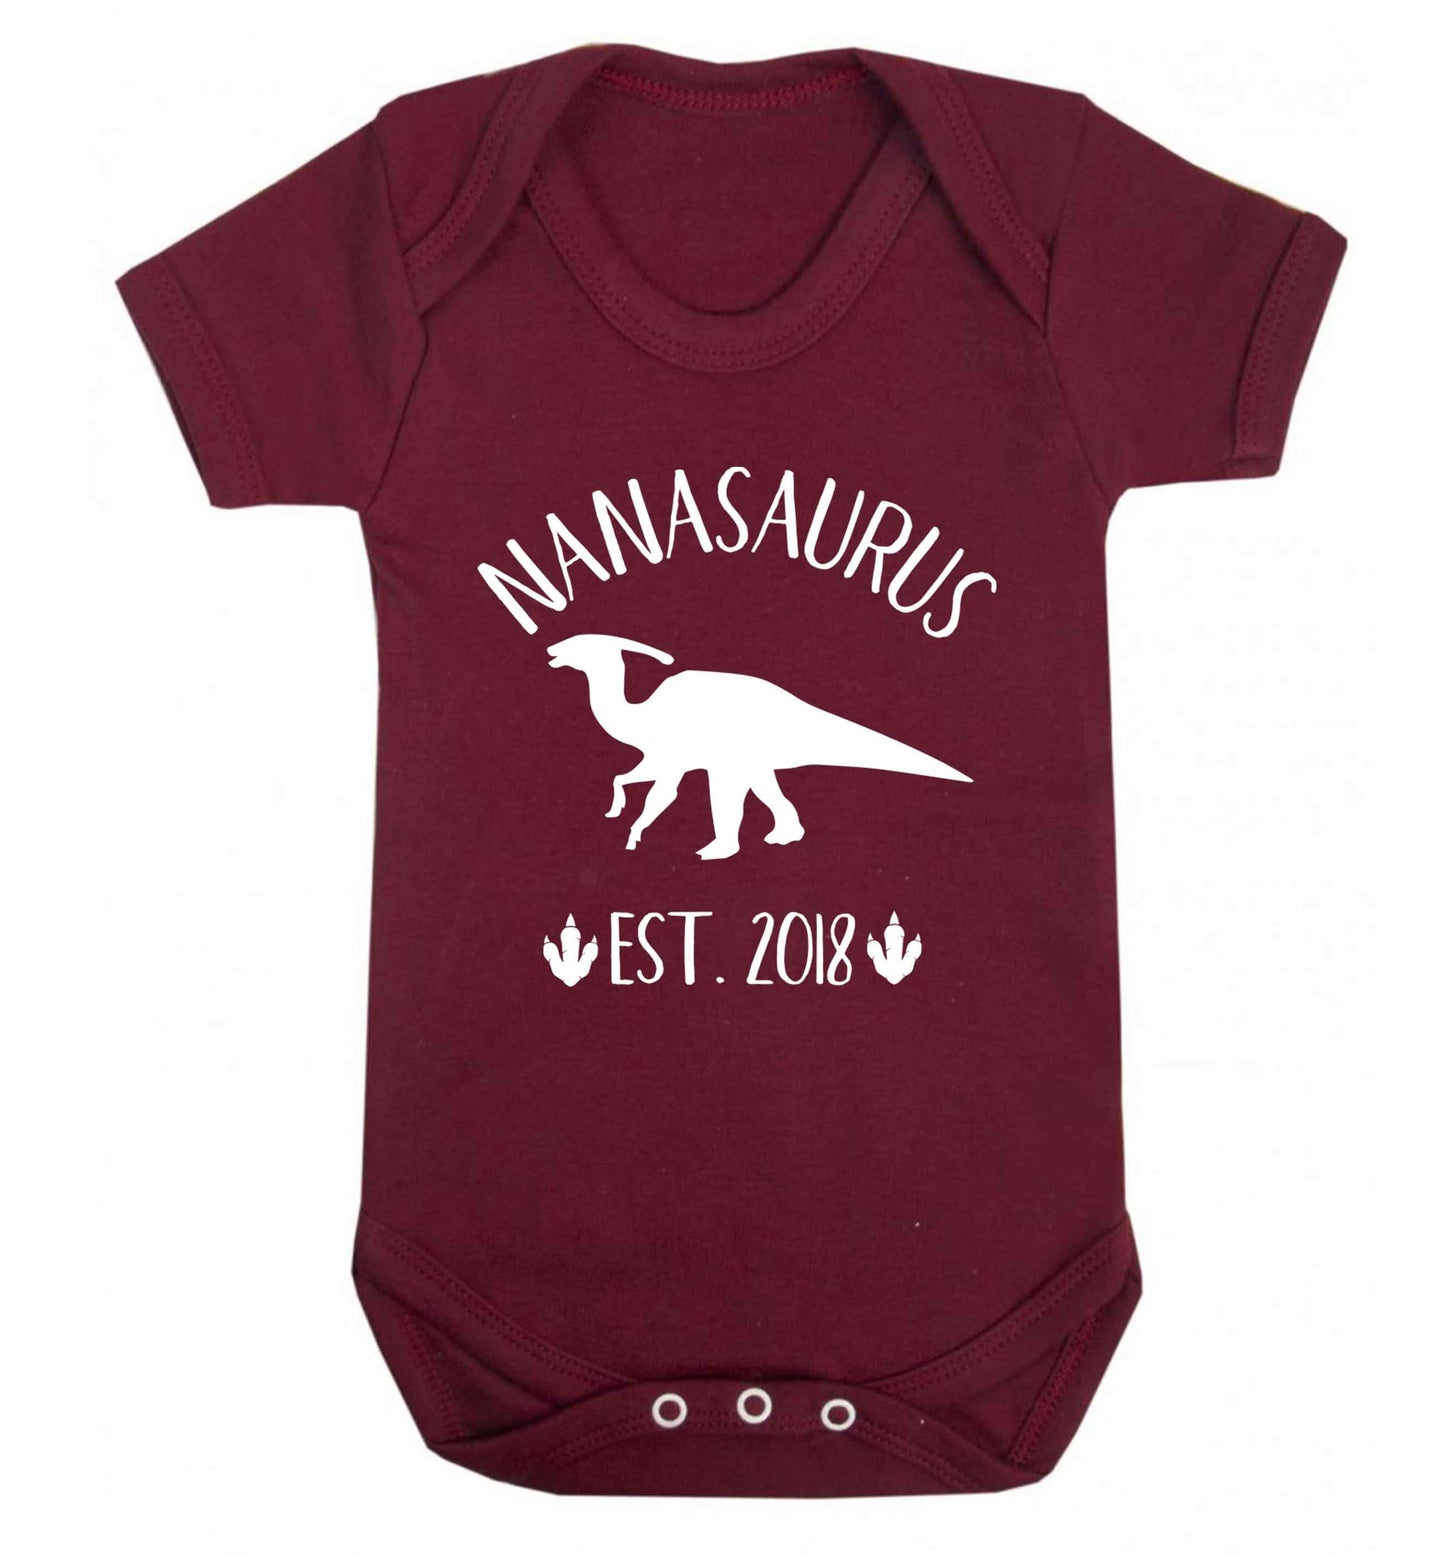 Personalised nanasaurus since (custom date) Baby Vest maroon 18-24 months